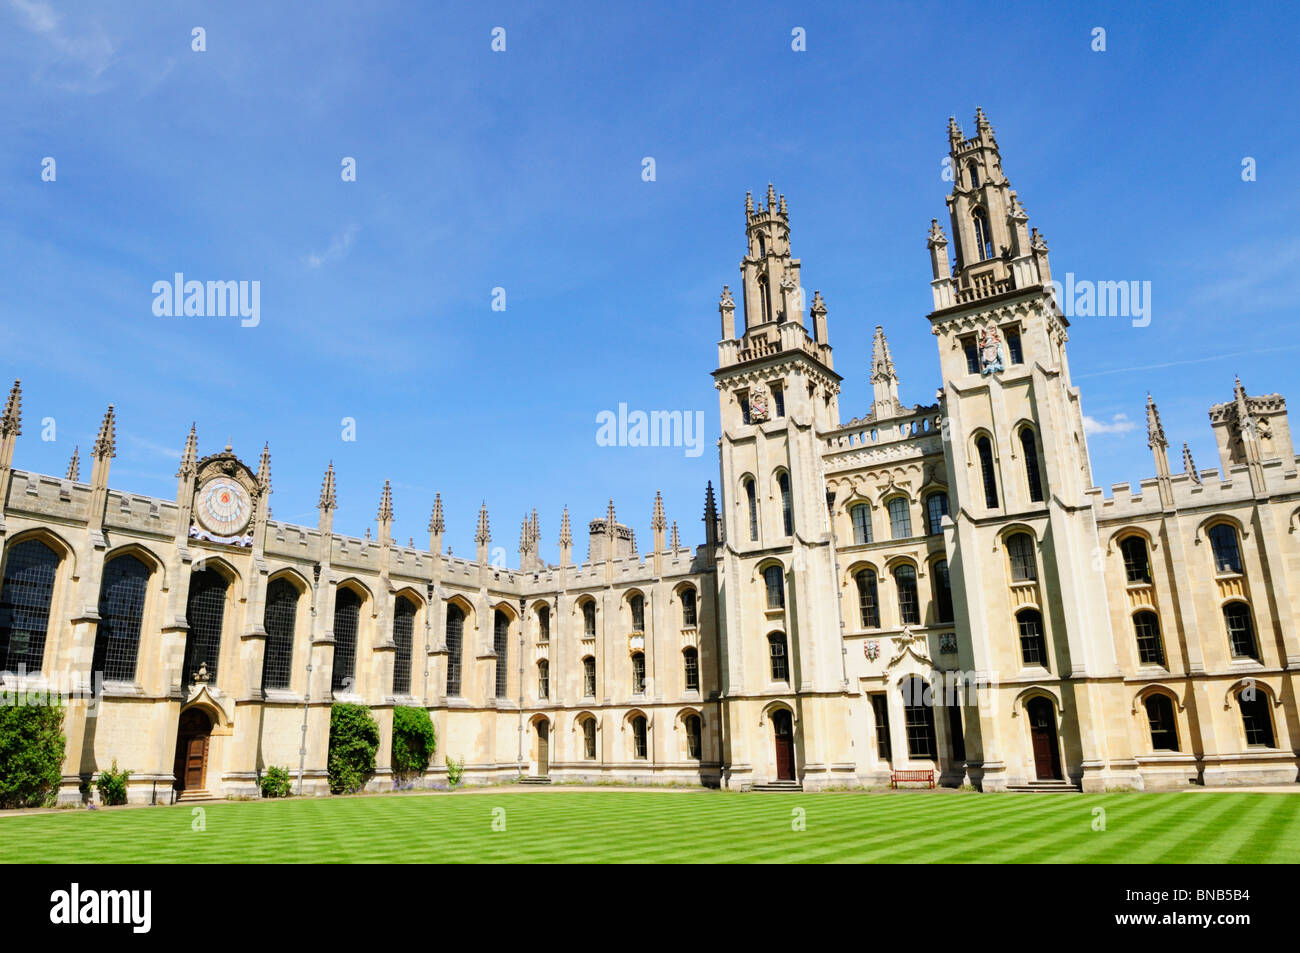 Les tours gothiques et quadrangle du nord de l'All Souls College, Oxford, England, UK Banque D'Images